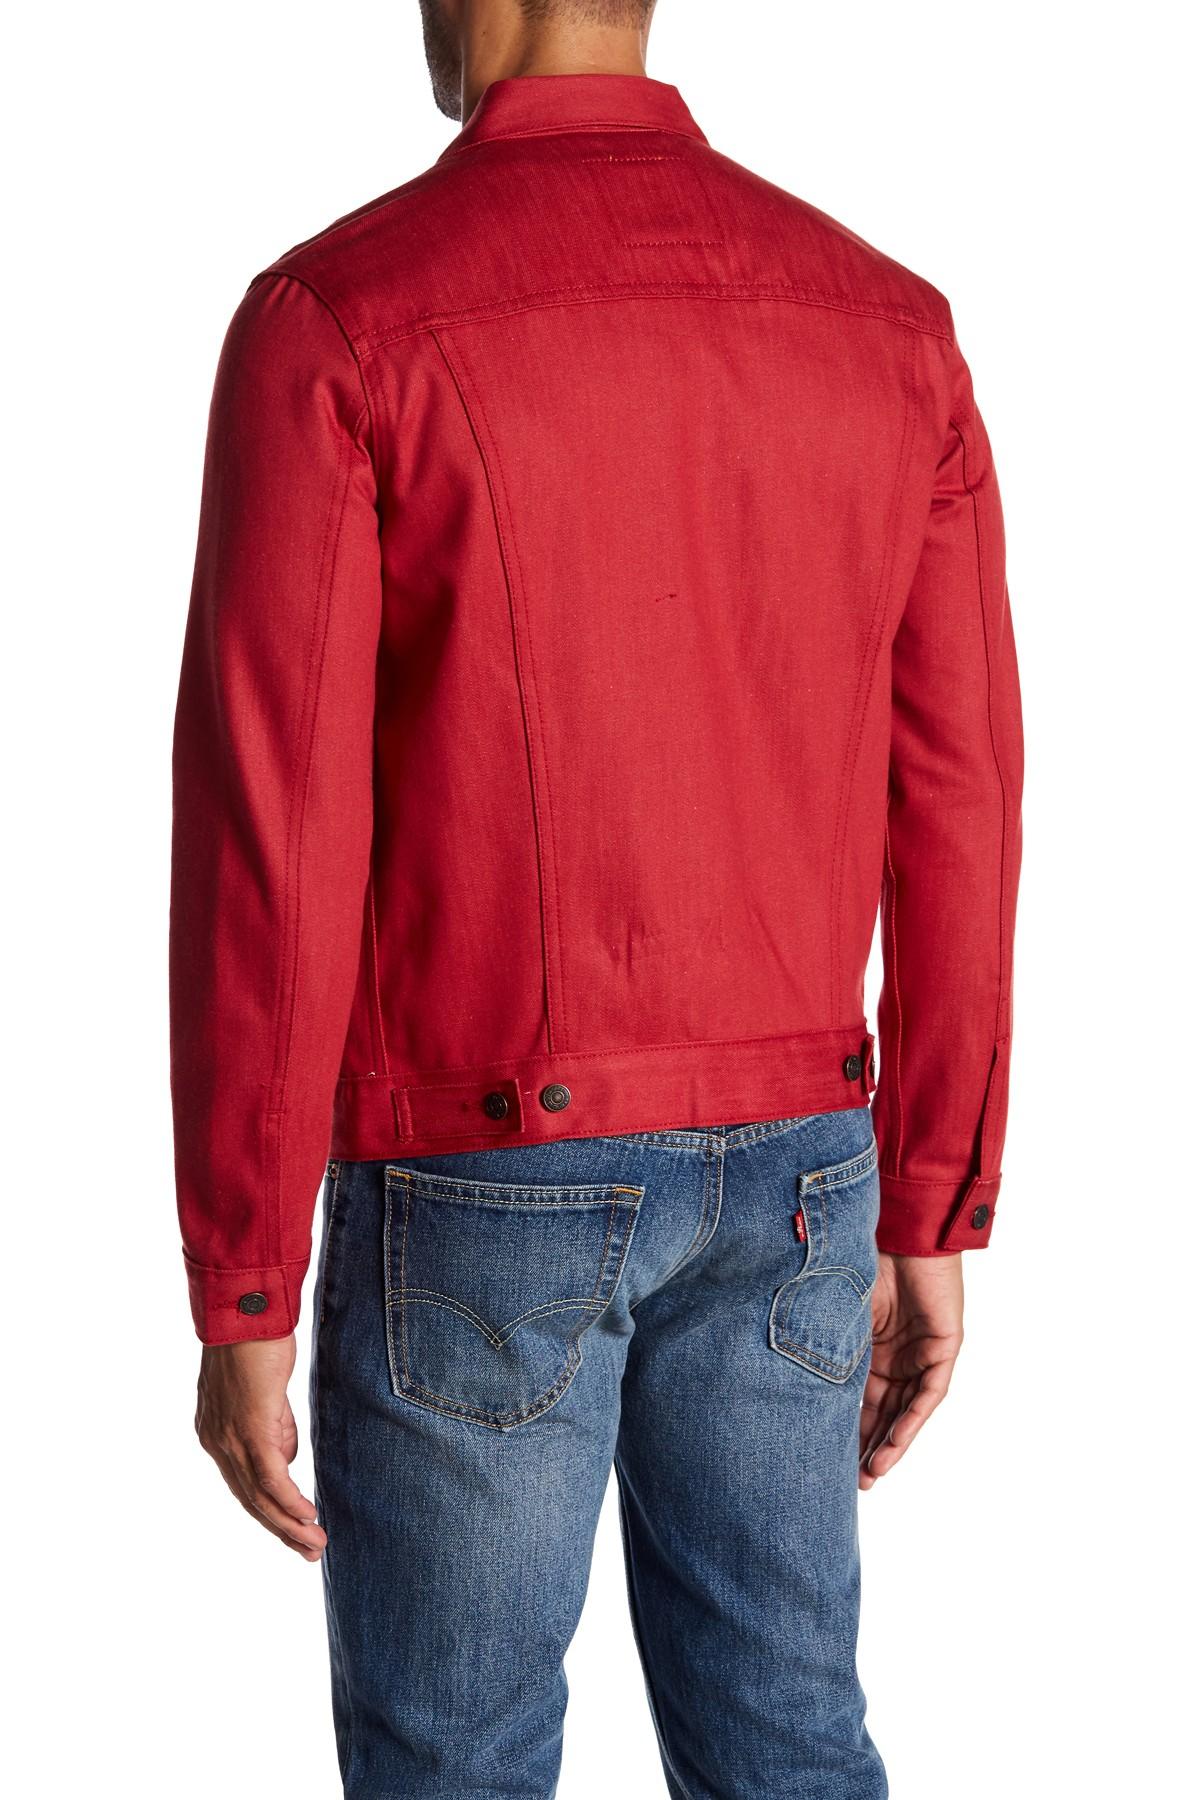 levi's red denim jacket mens